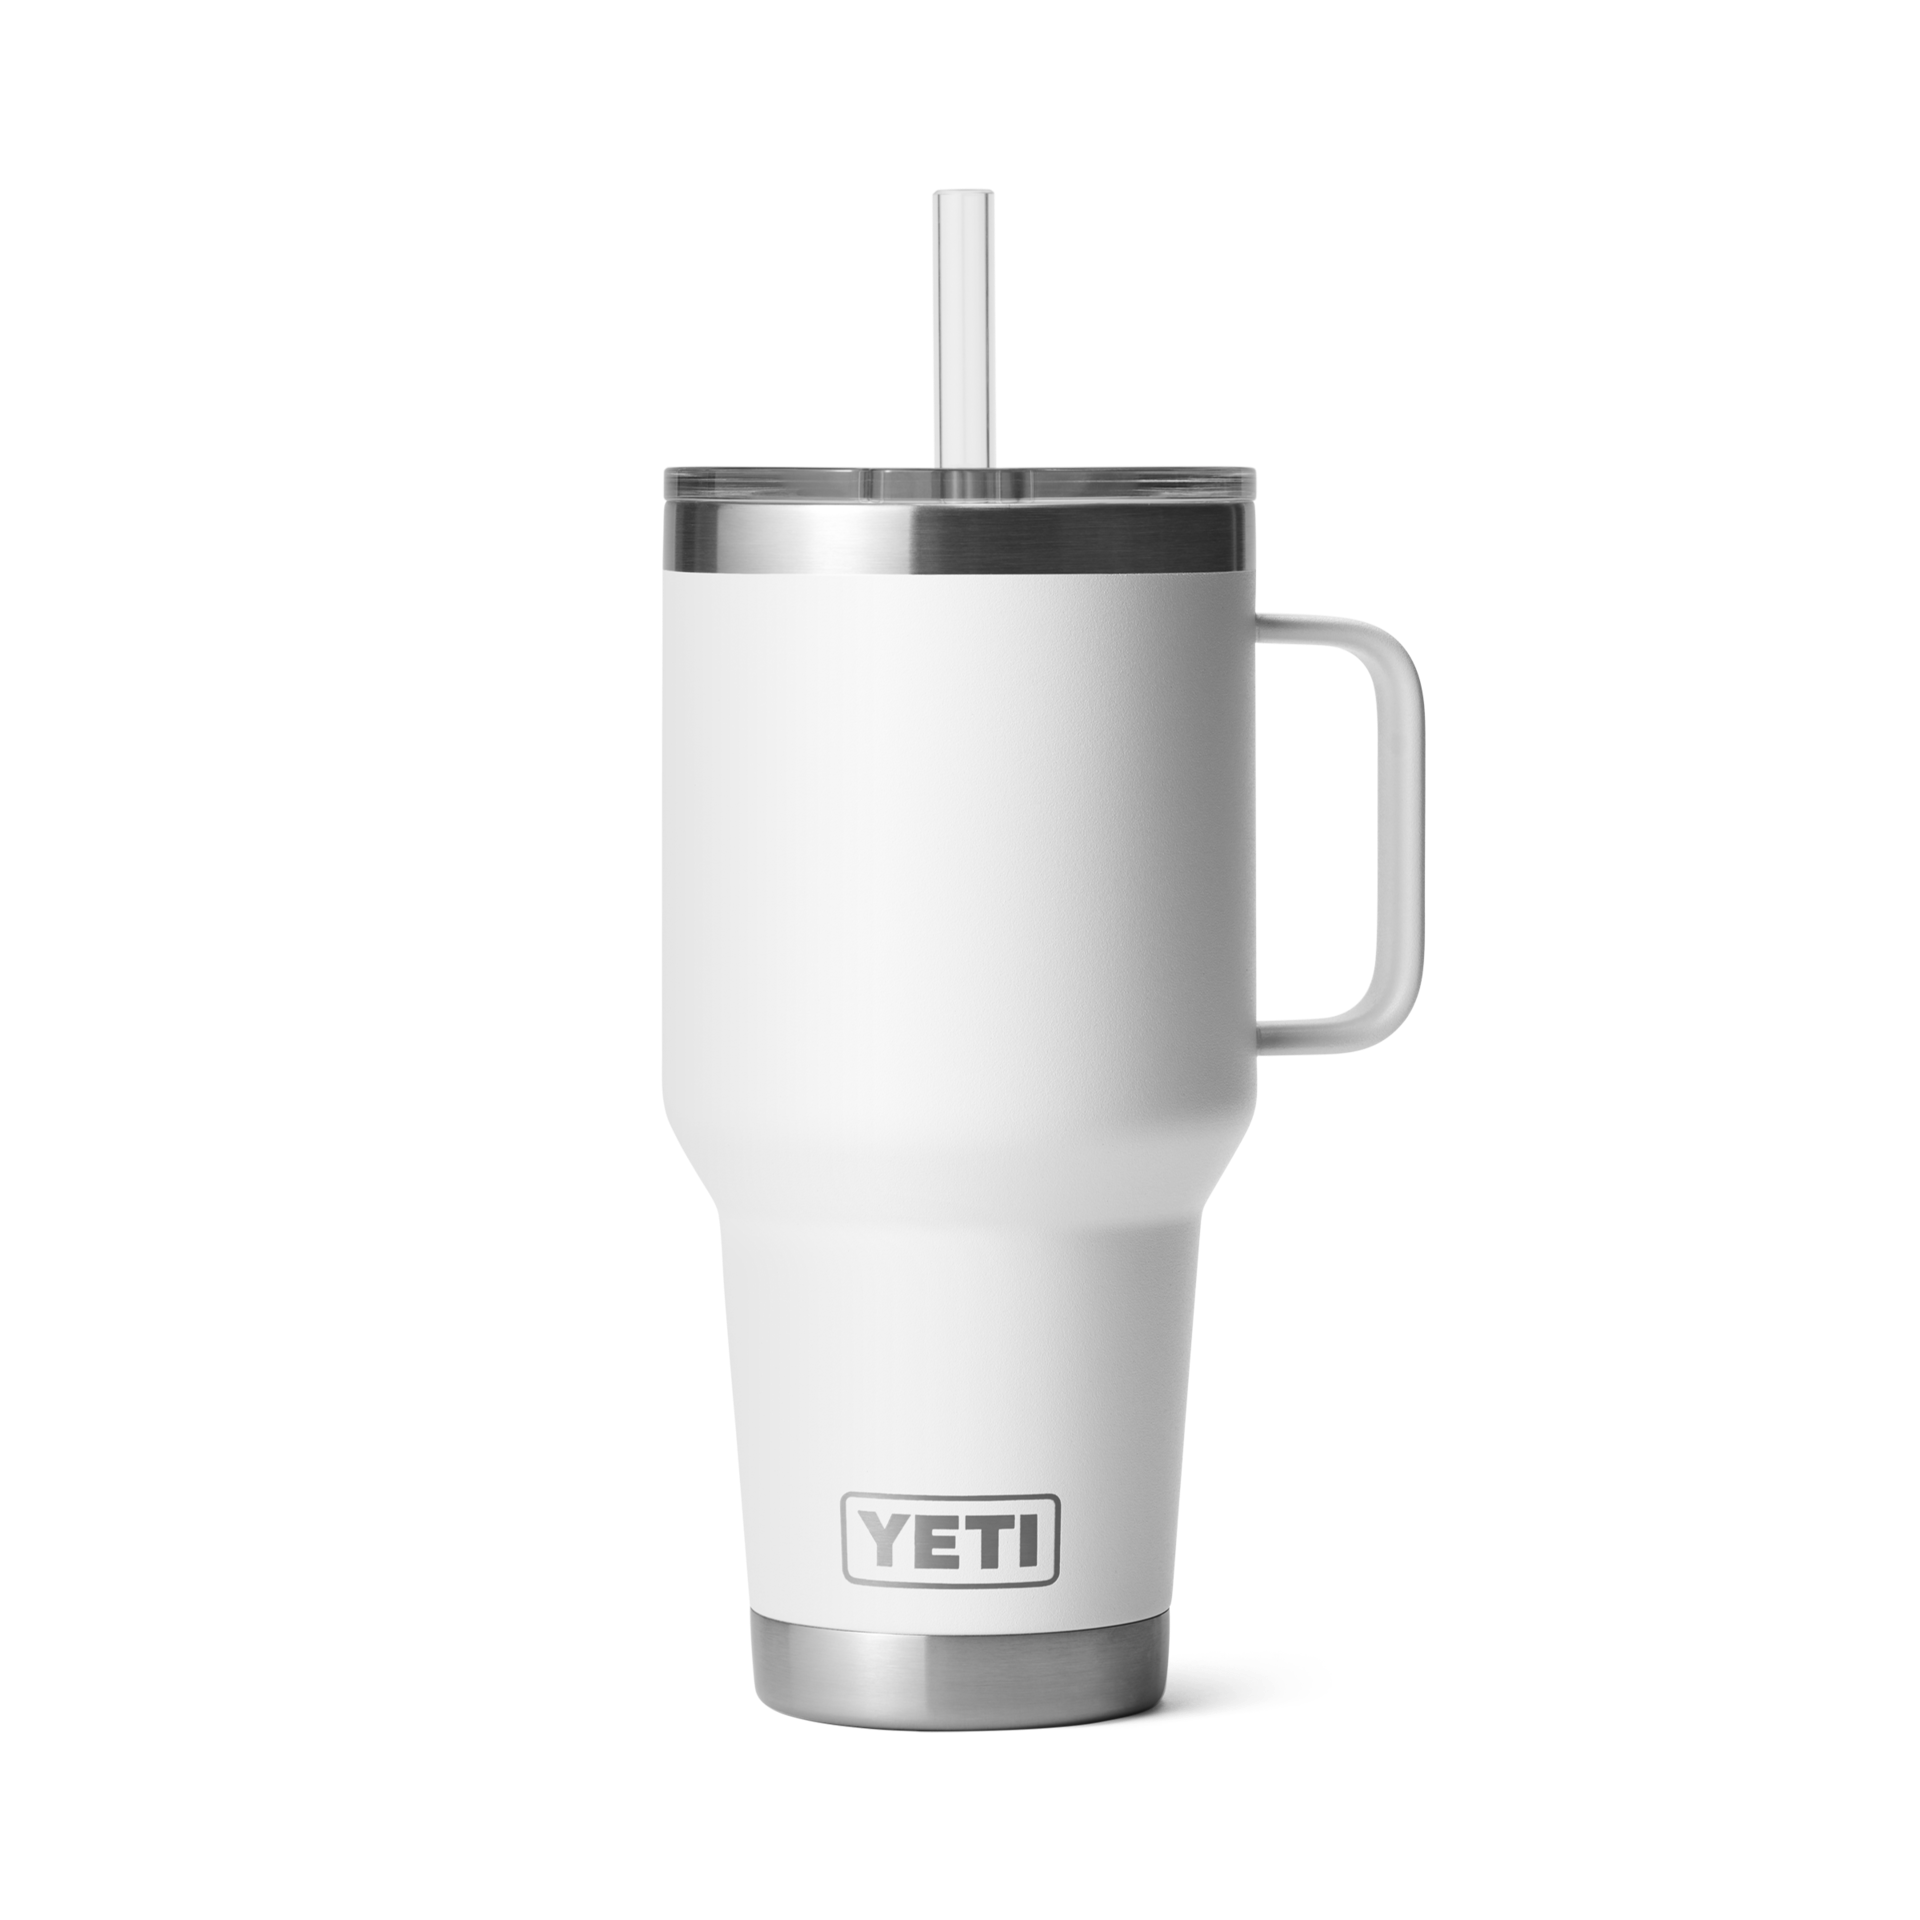 Yeti Rambler 35 oz Mug with Straw Lid Accessories Yeti White  